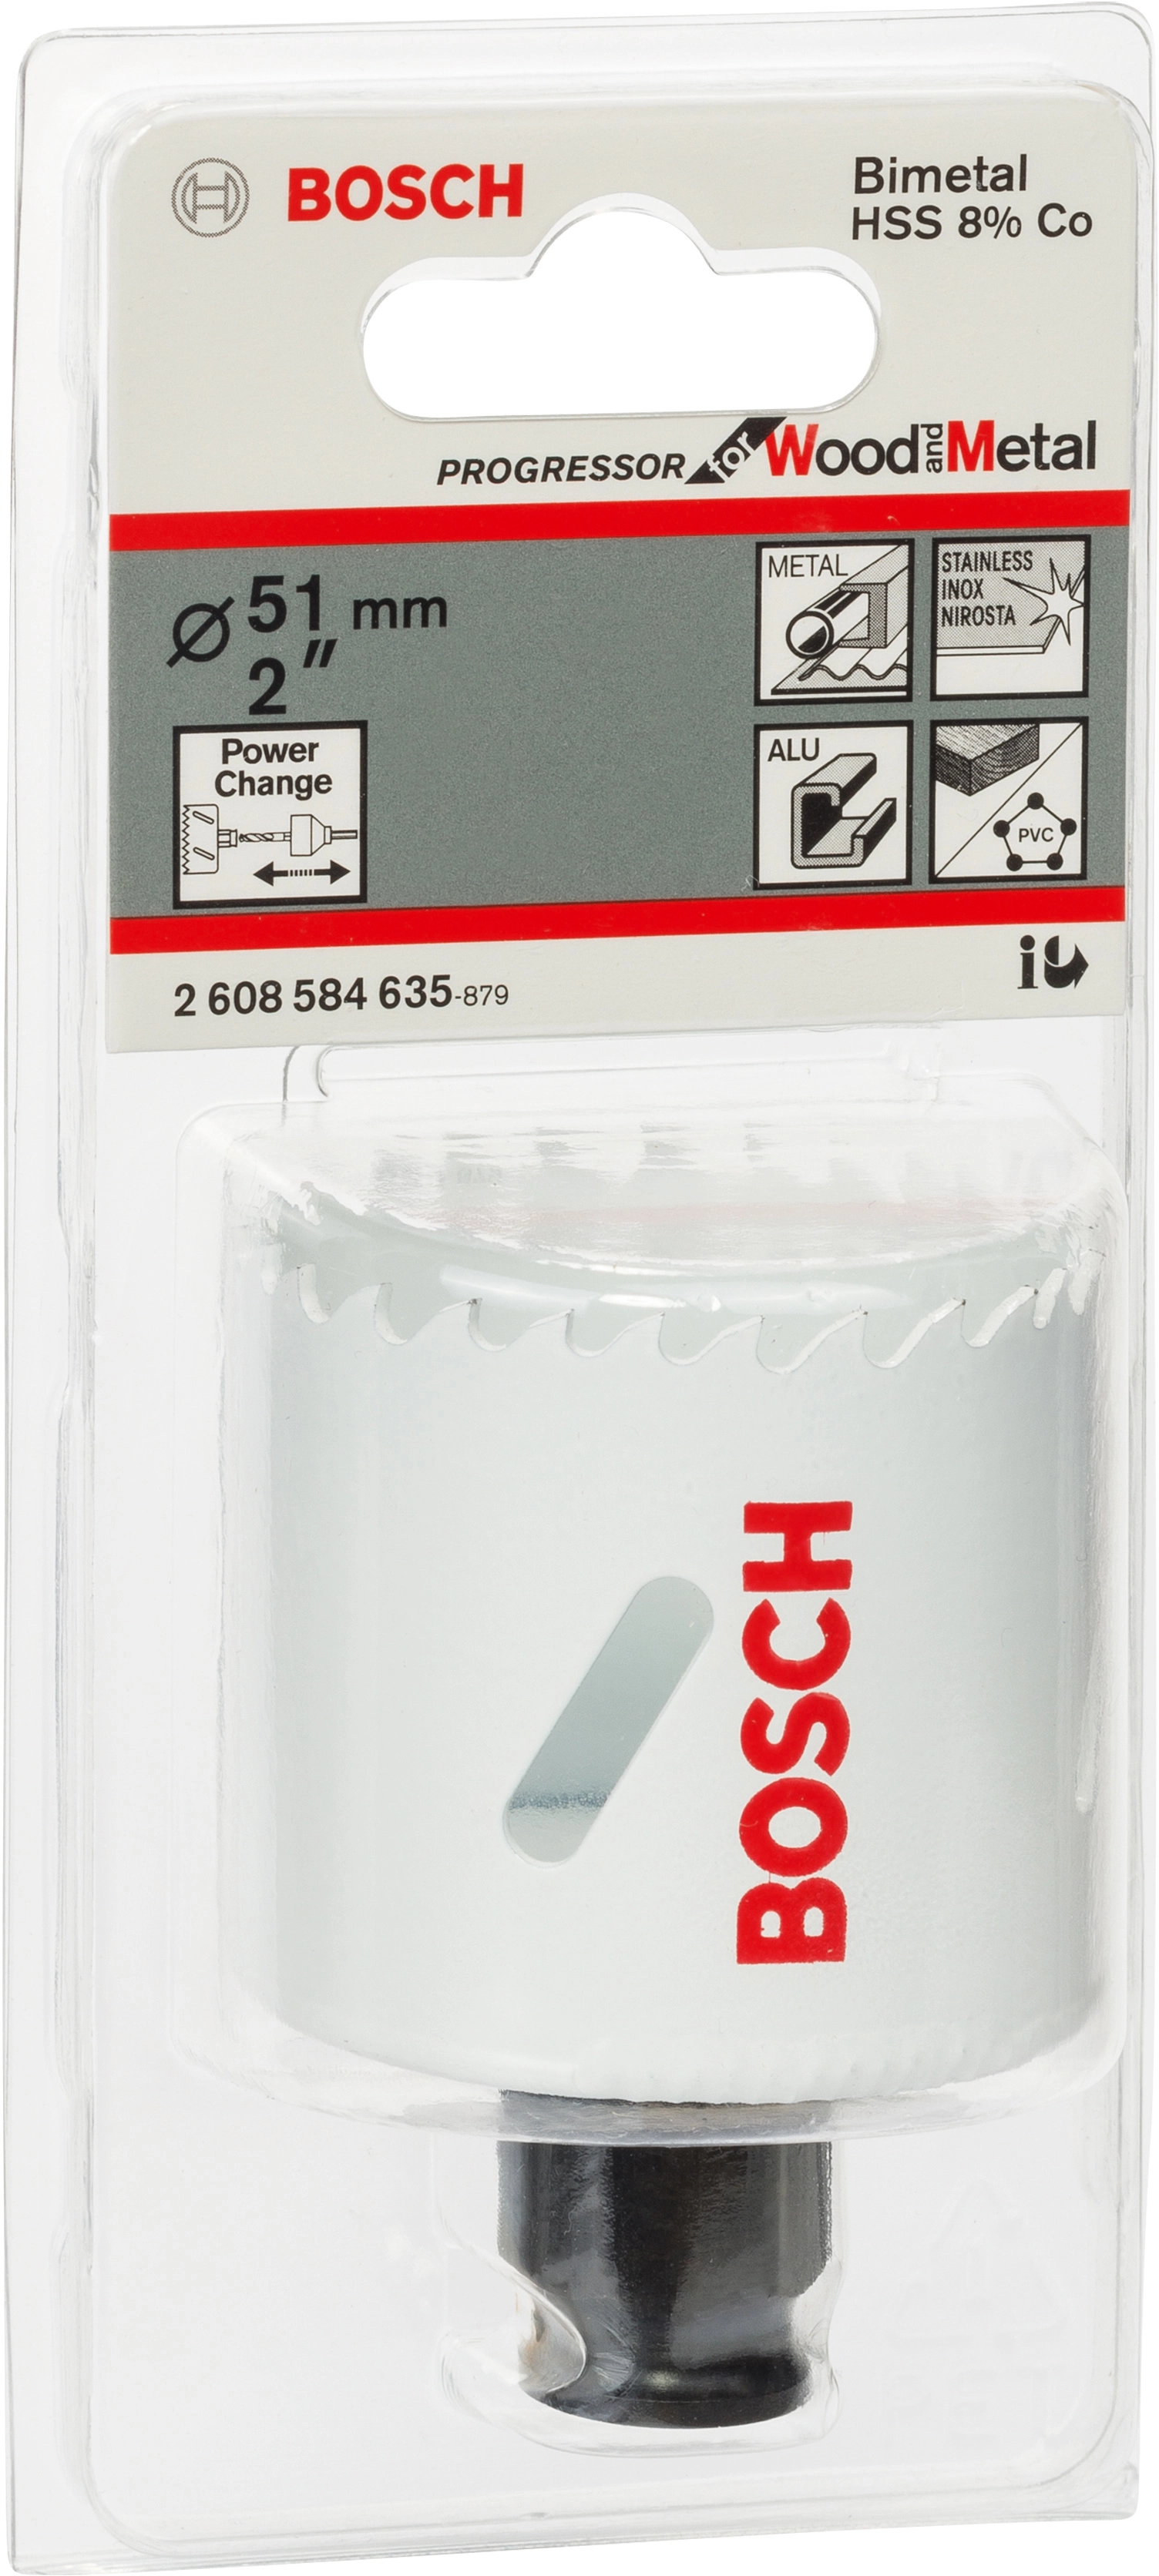 Bosch Lochsäge Pro Progressor for Wood and Metal Ø 51 mm kaufen bei OBI